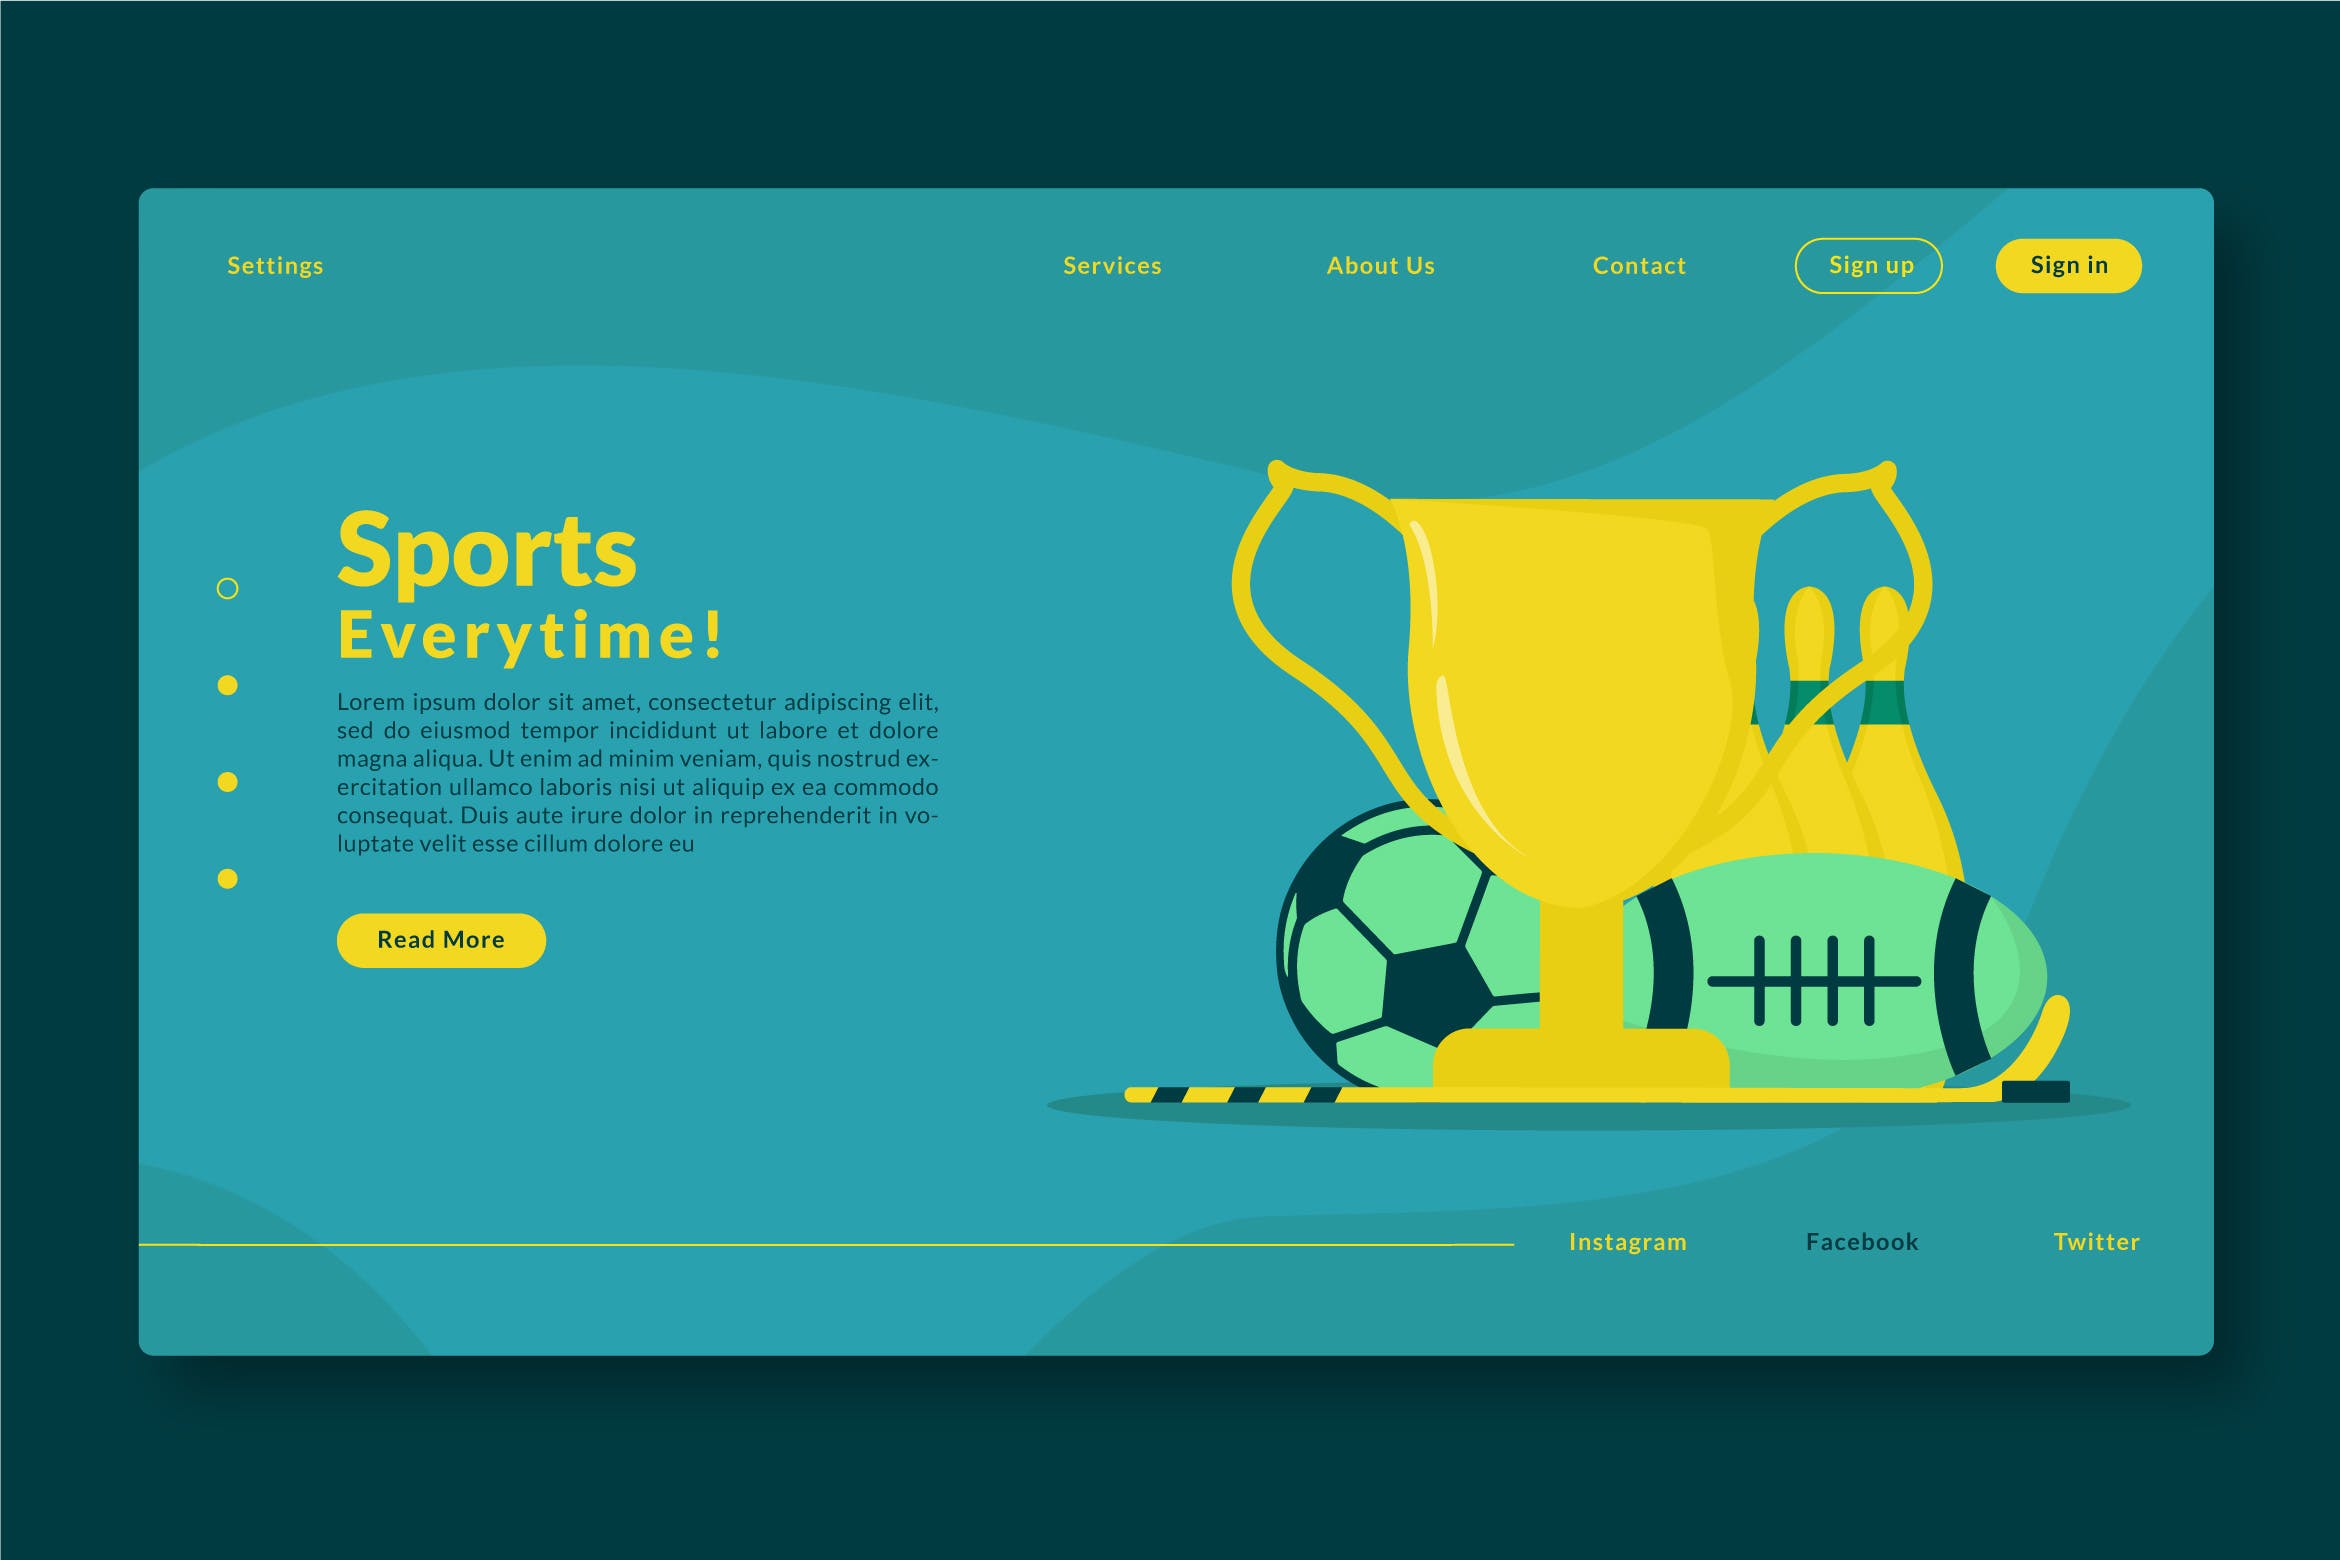 体育运动主题网站设计矢量插画素材 Sports Everytime – Web Header & Landing Page GR插图